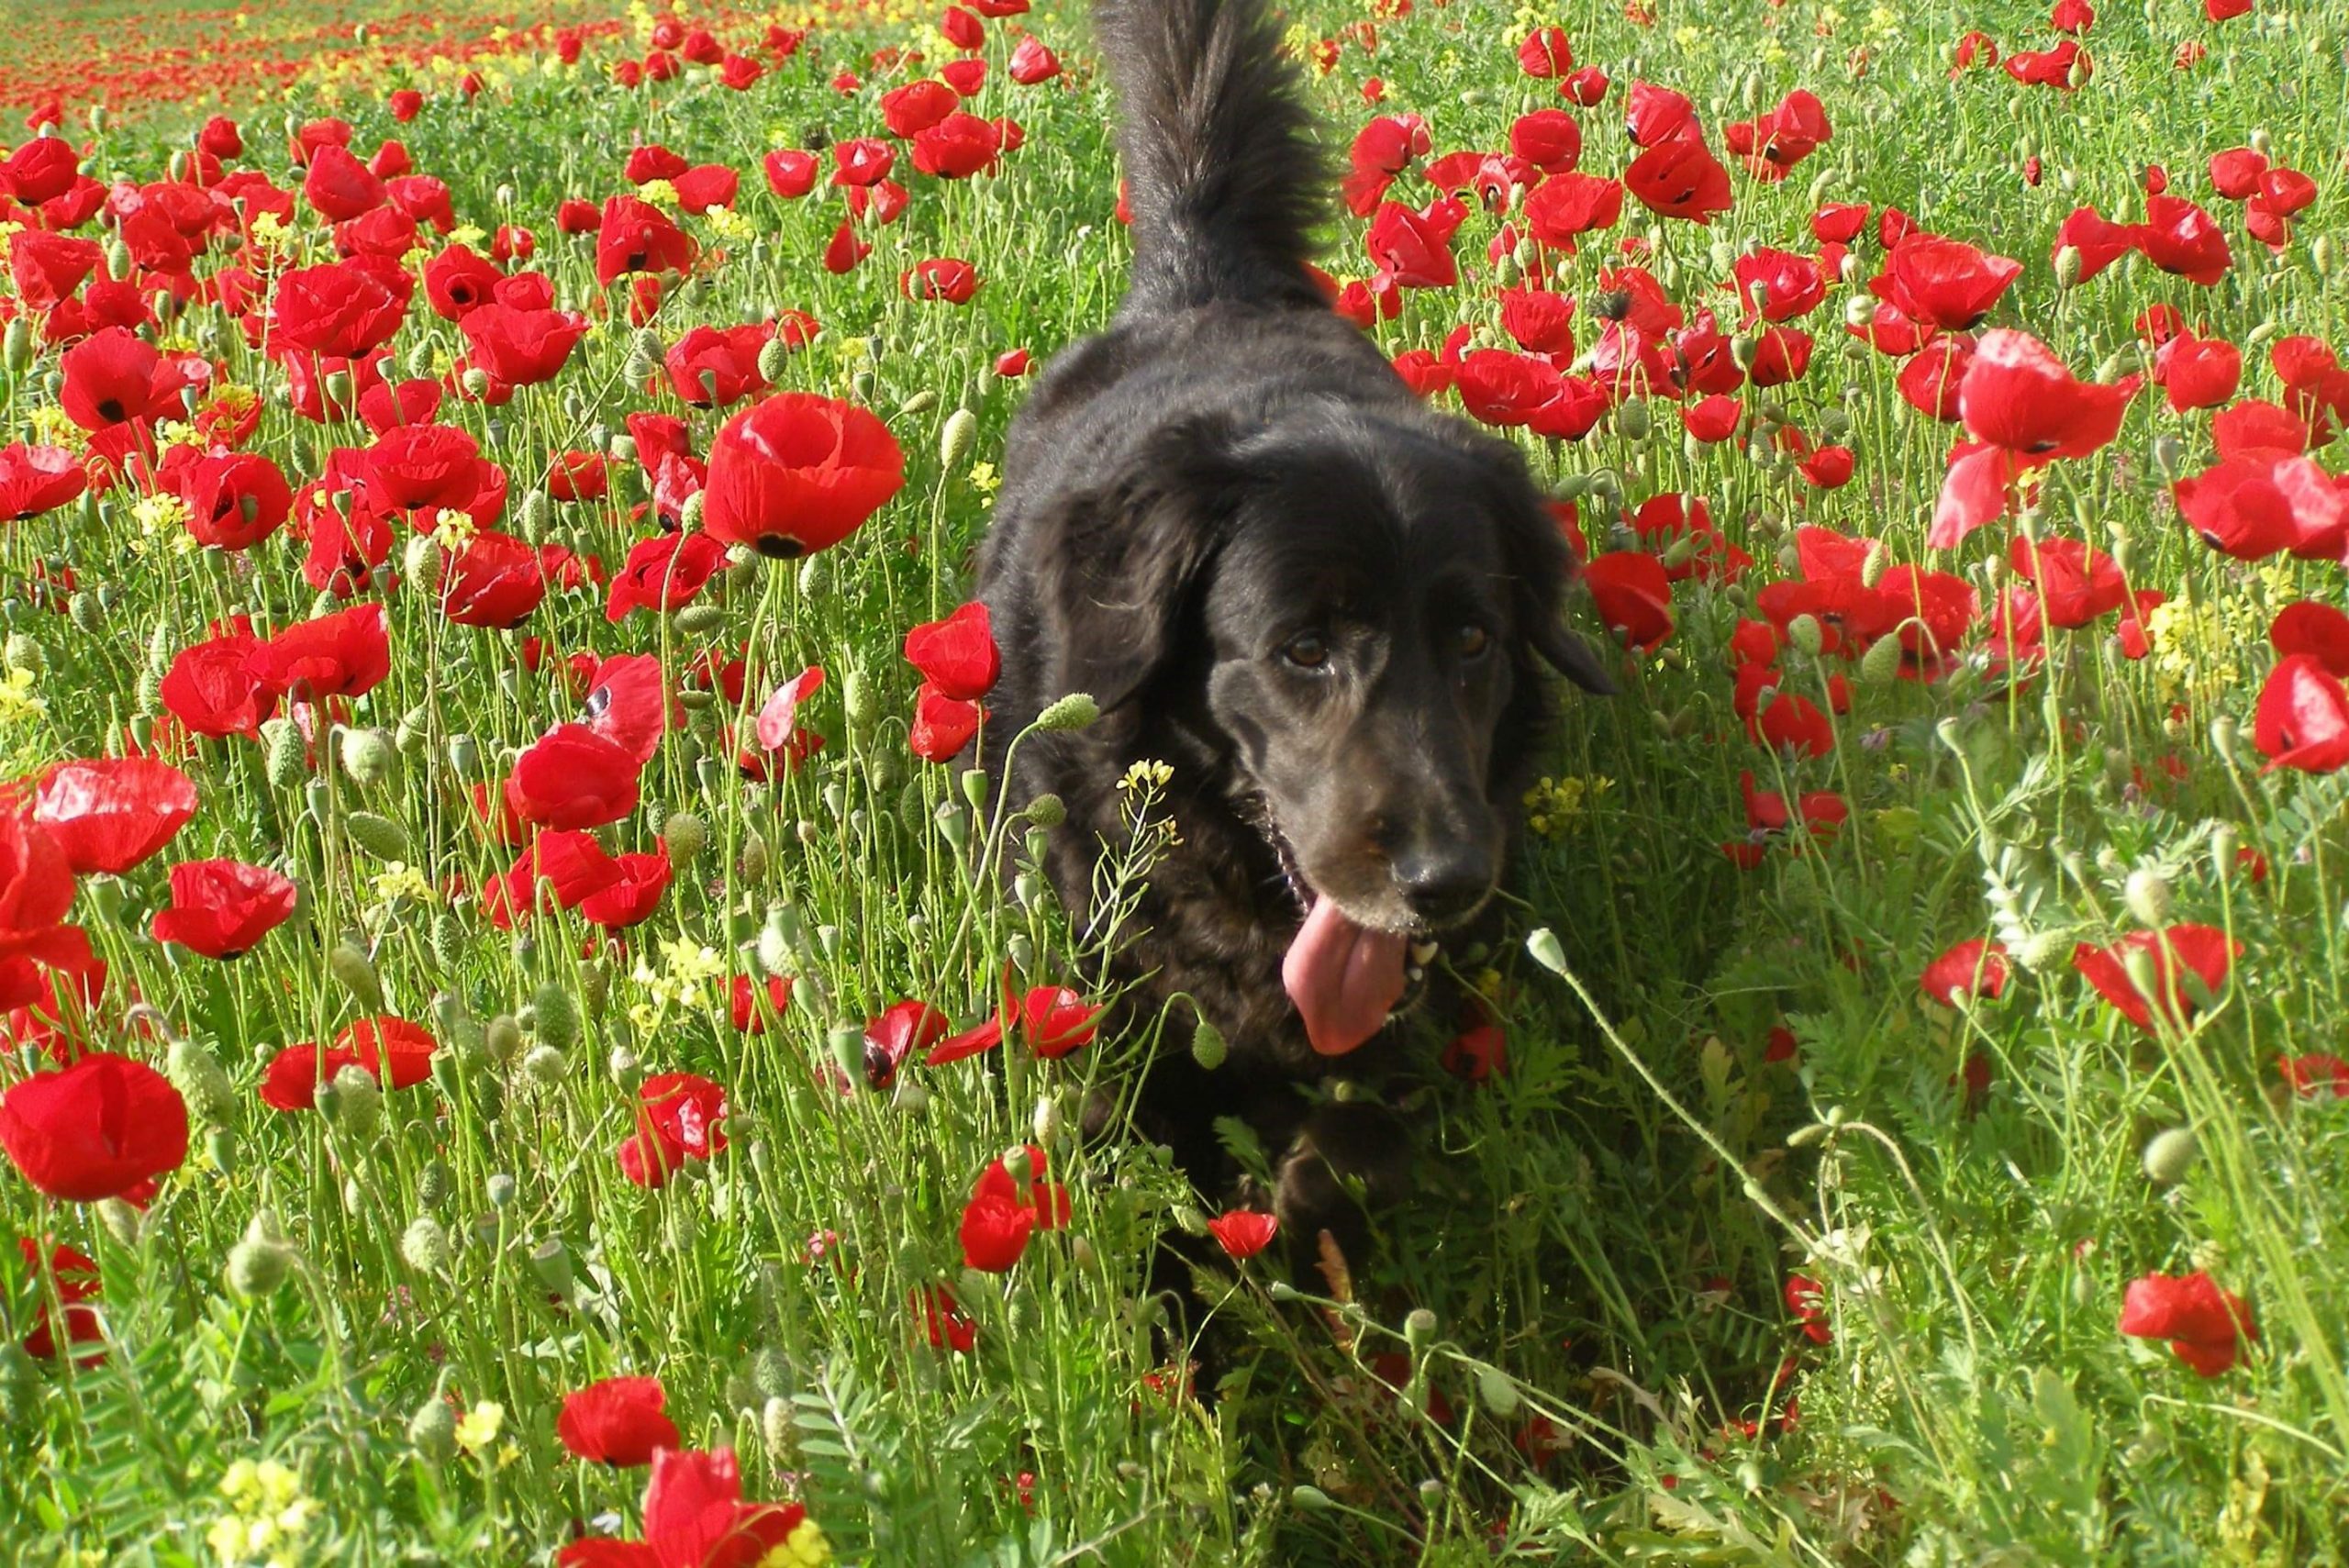 נינה ז"ל, הכלבה של דפנה טלמון, מטיילת בשדה כלניות